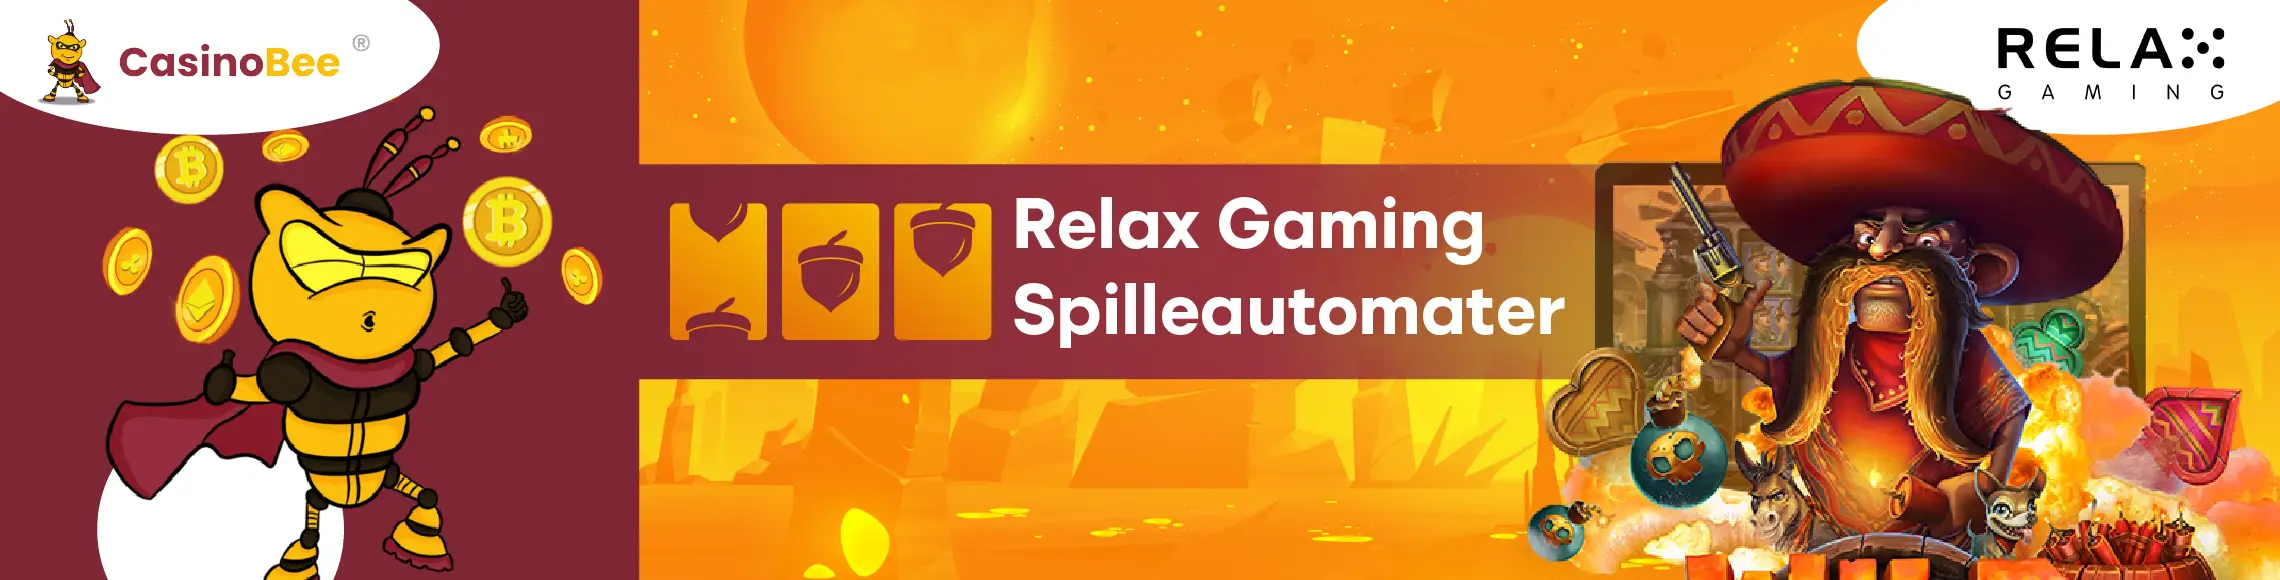 Typer spilleautomater som tilbys av Relax Gaming
